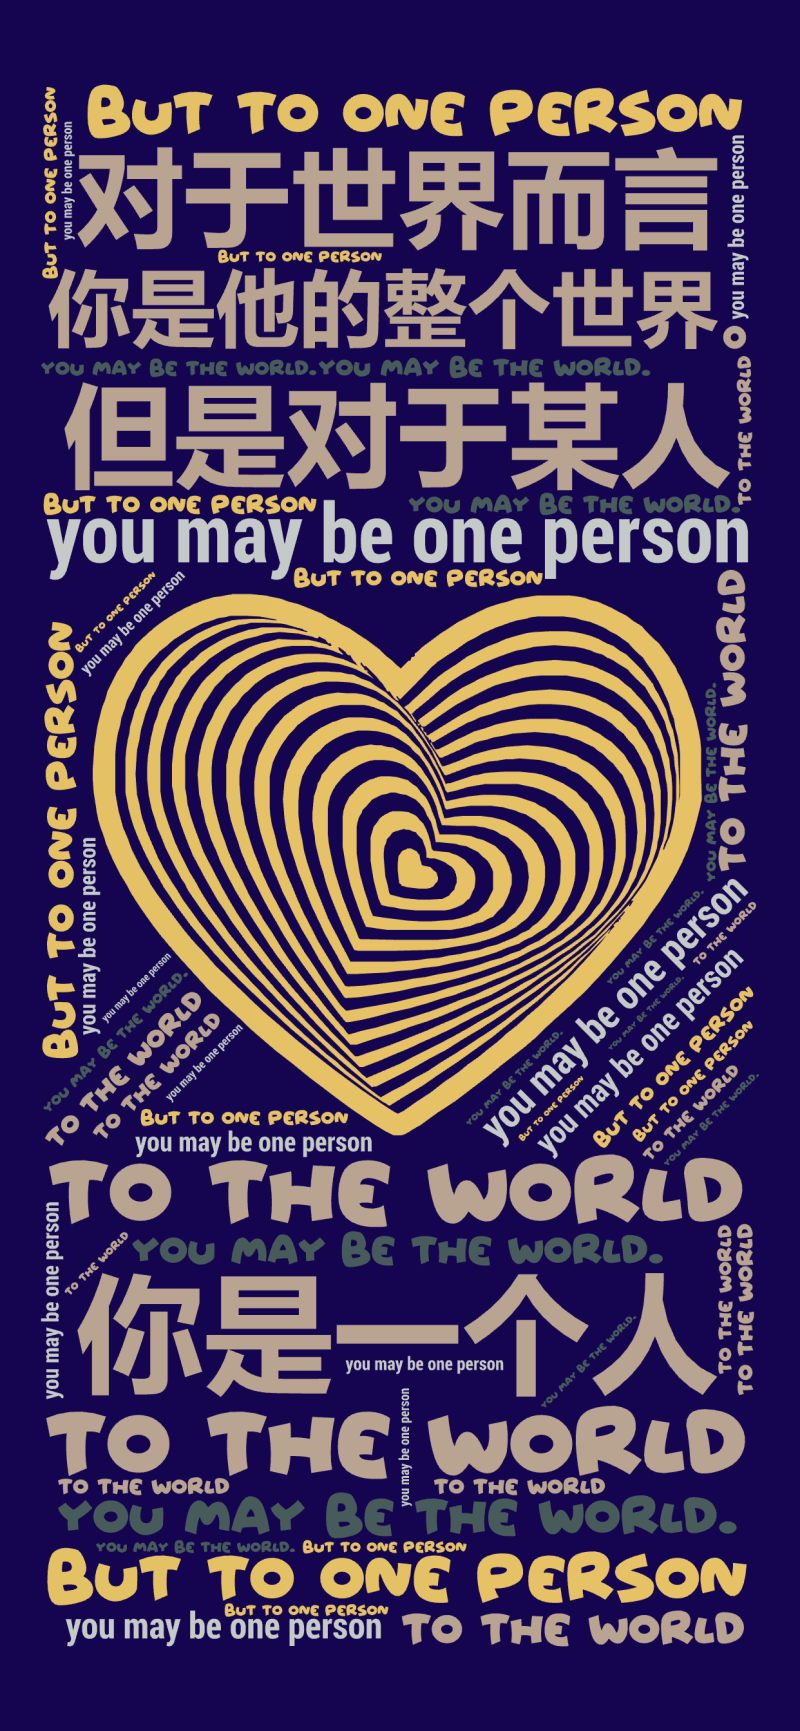 对于世界而言,你是一个人,但是对于某人,你是他的整个世界。,To the world ,you may be one person,but ,文字词云图-wenziyun.cn